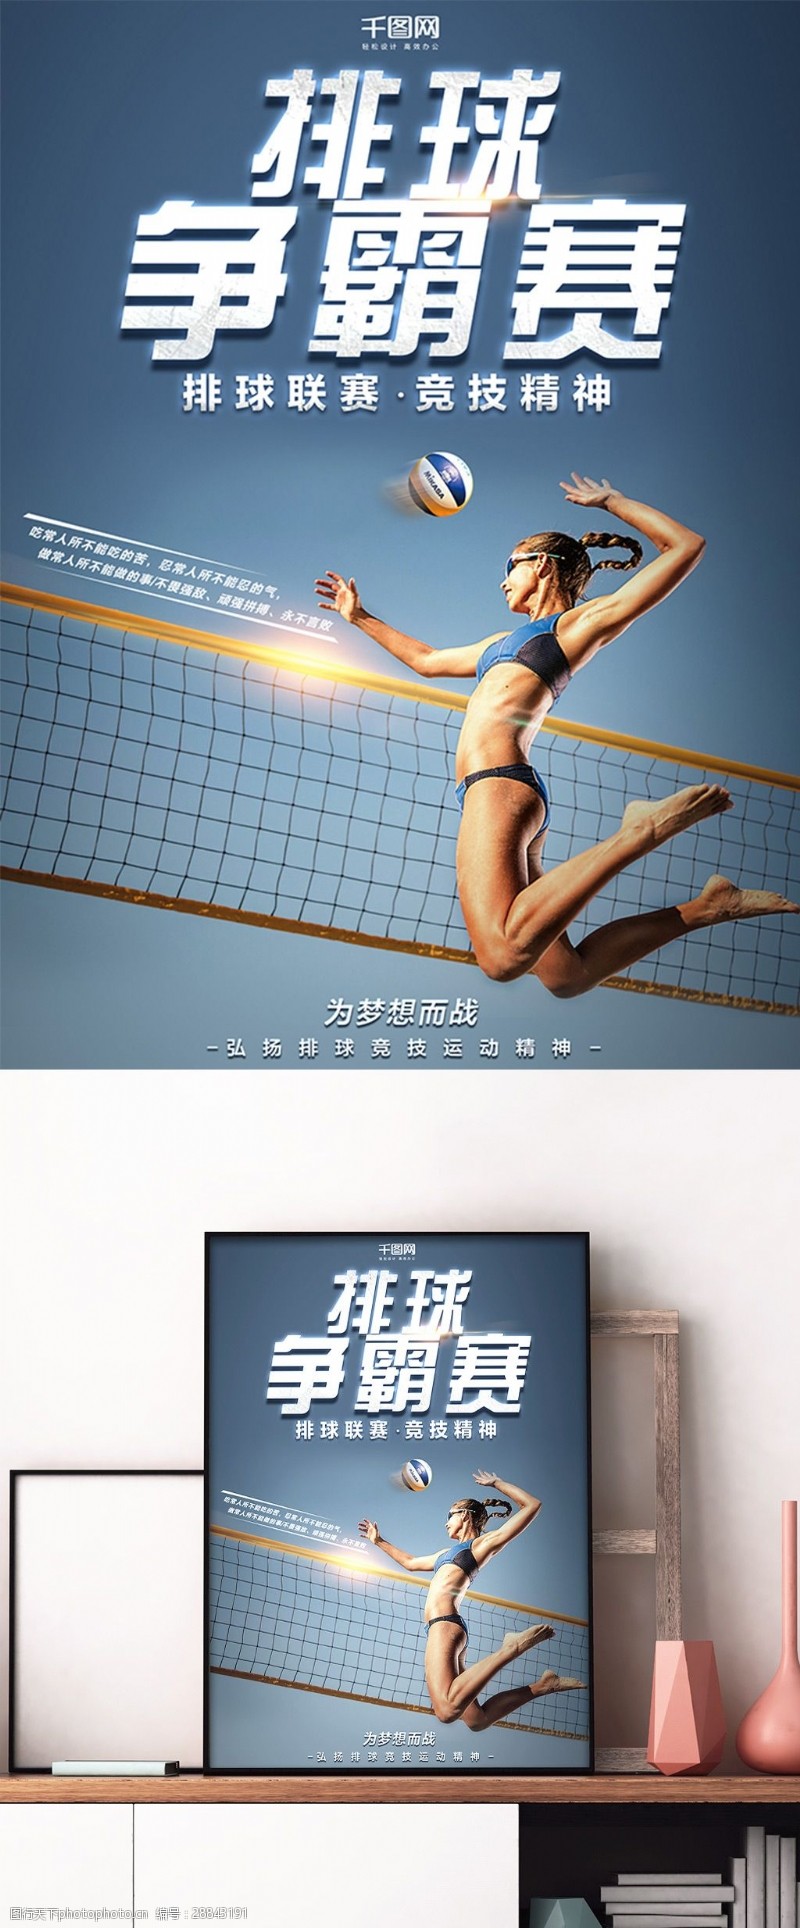 排球赛蓝色排球时尚体育宣传海报设计